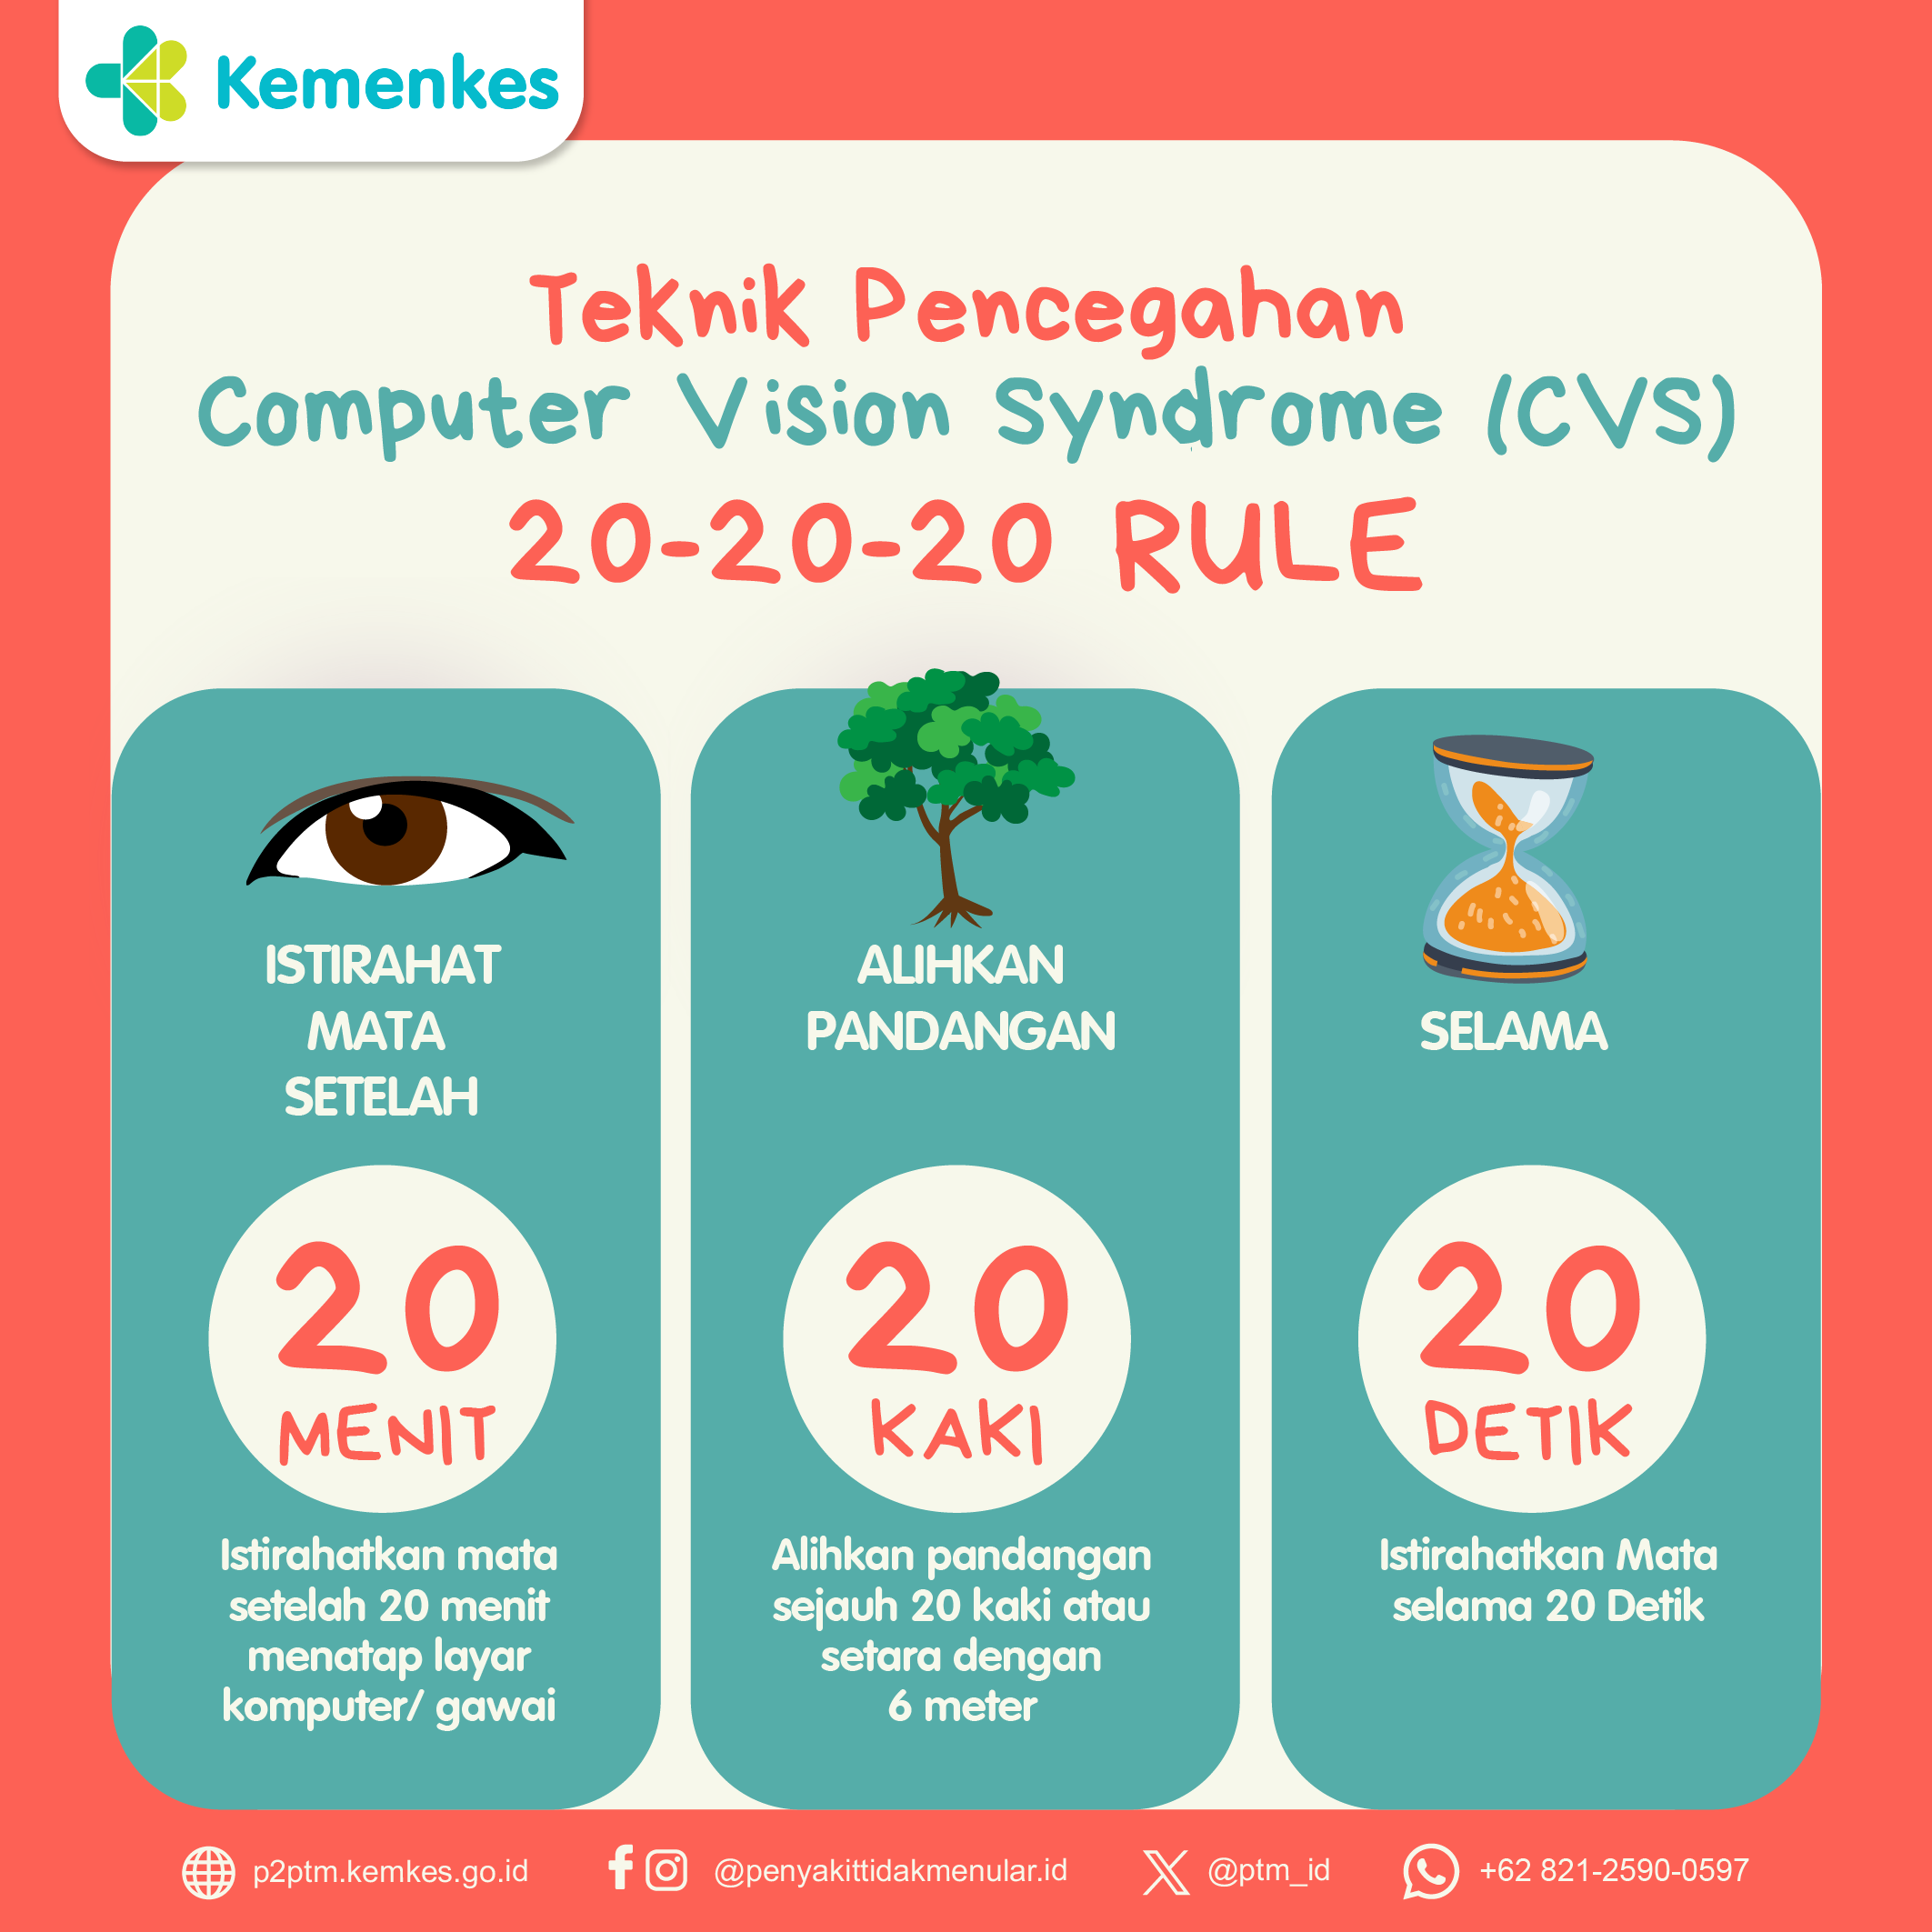 Teknik Pencegahan Computer Vision Syndrome (CVS)